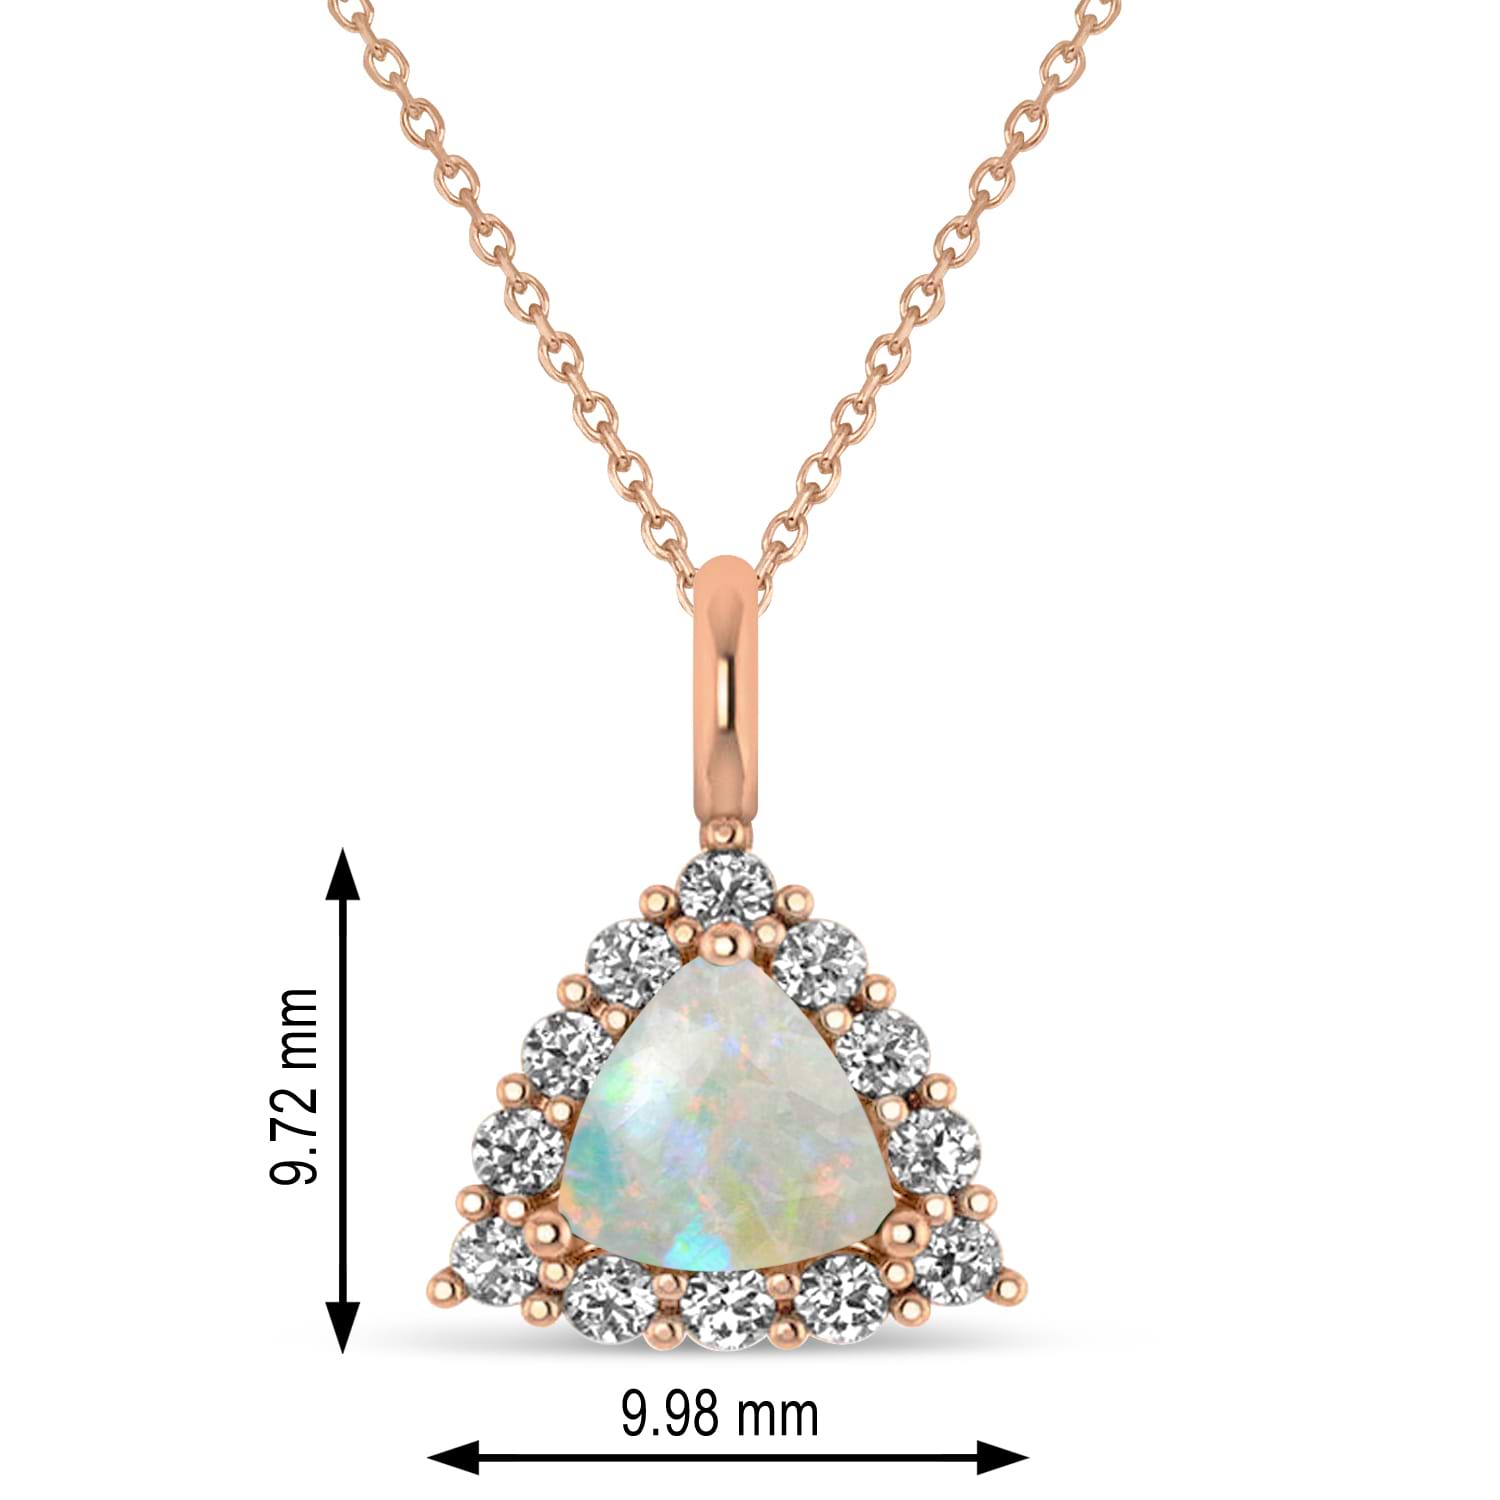 Diamond & Opal Trillion Cut Pendant Necklace 14k Rose Gold (1.24ct)